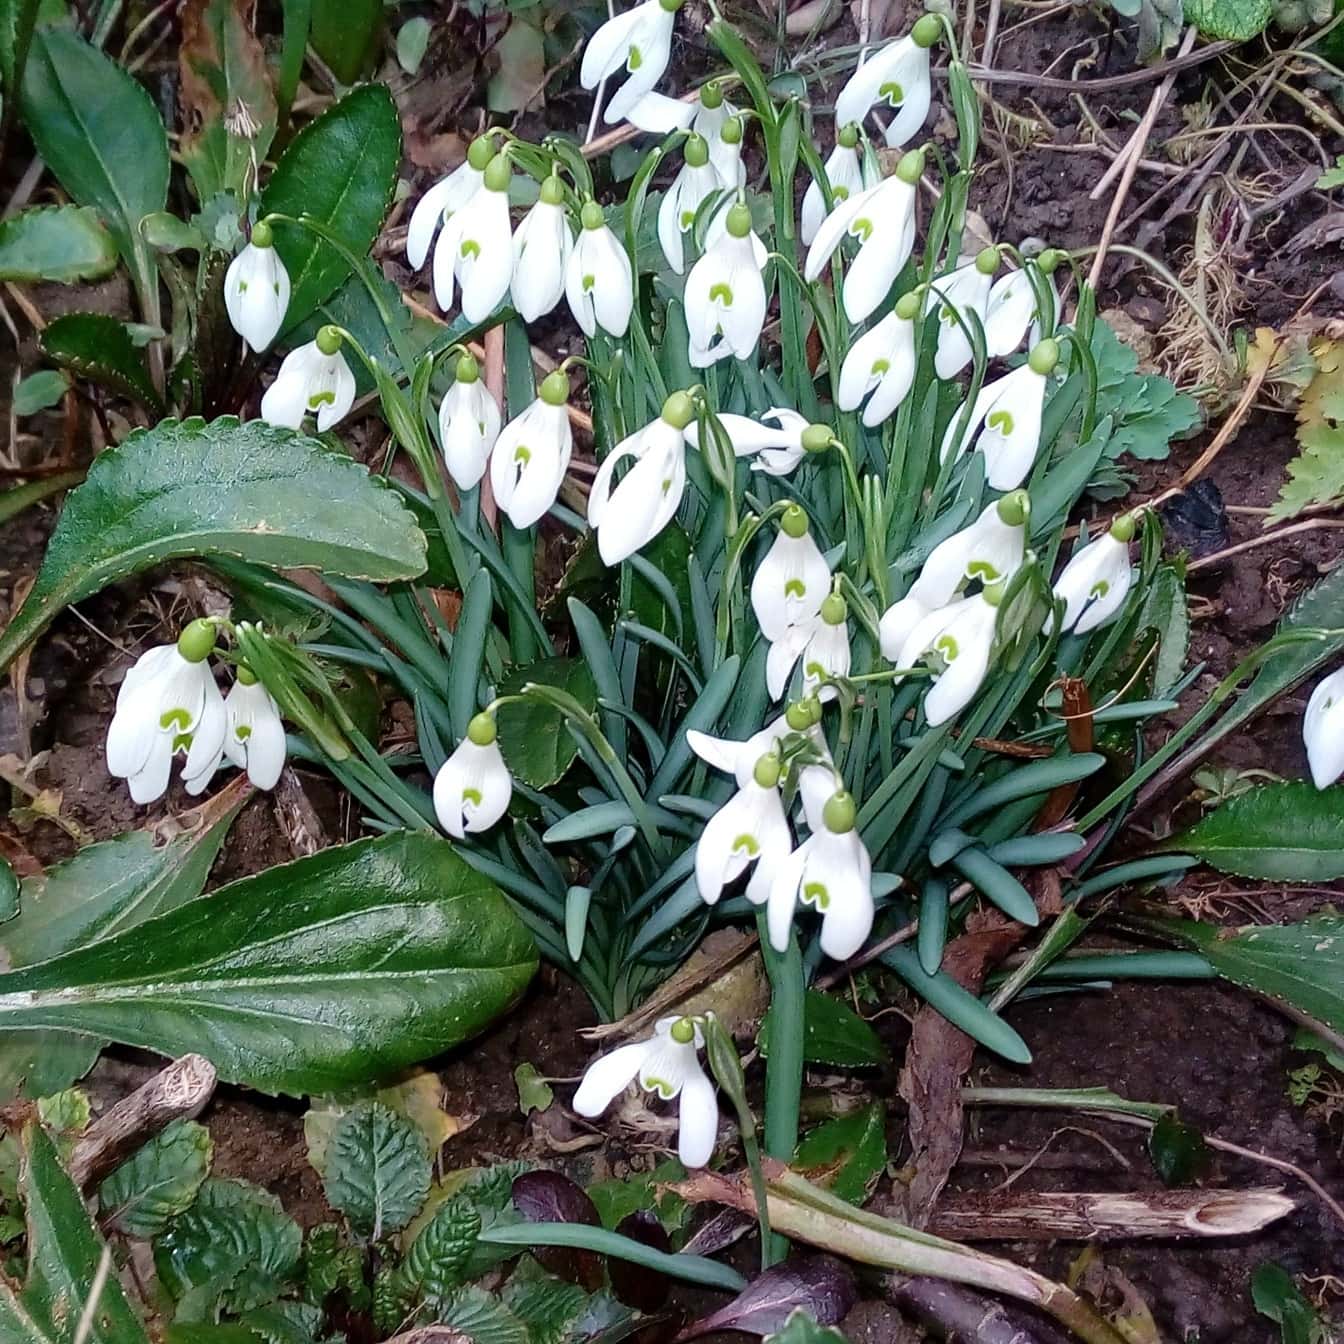 Sněženka (Galanthus nivalis) bílý květ na jaře